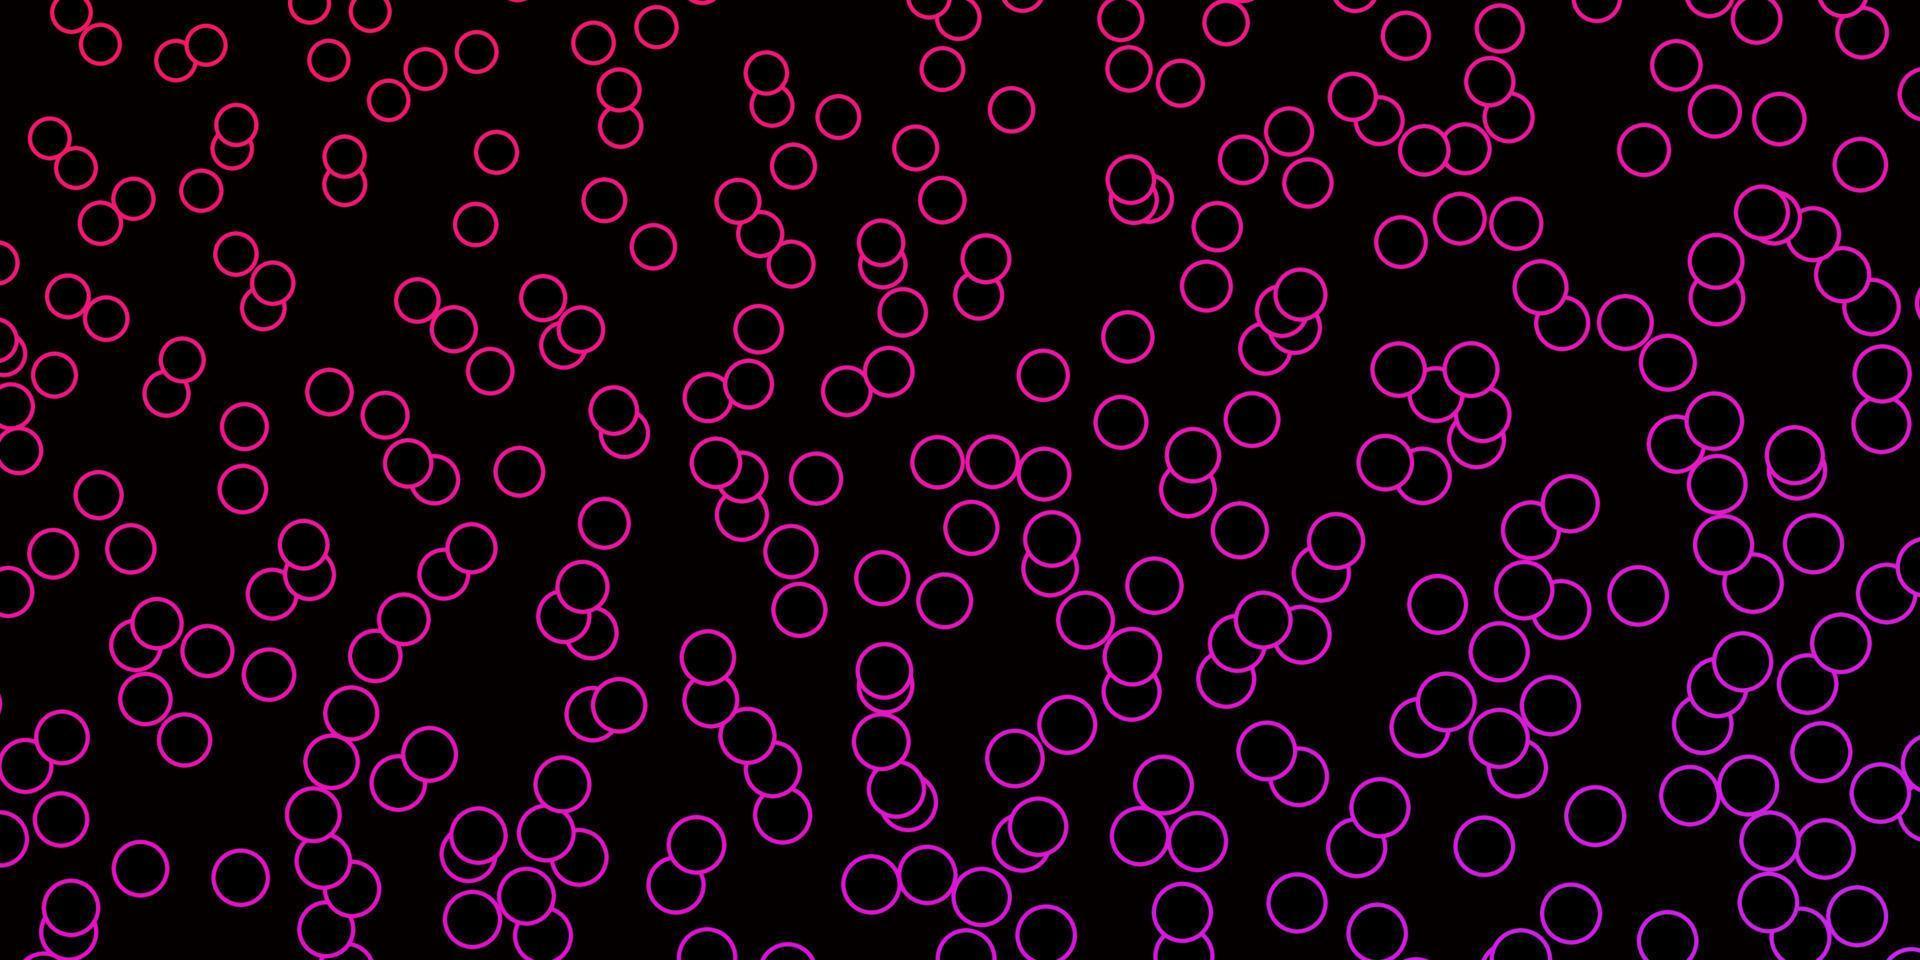 mörk lila, rosa vektor bakgrund med cirklar.